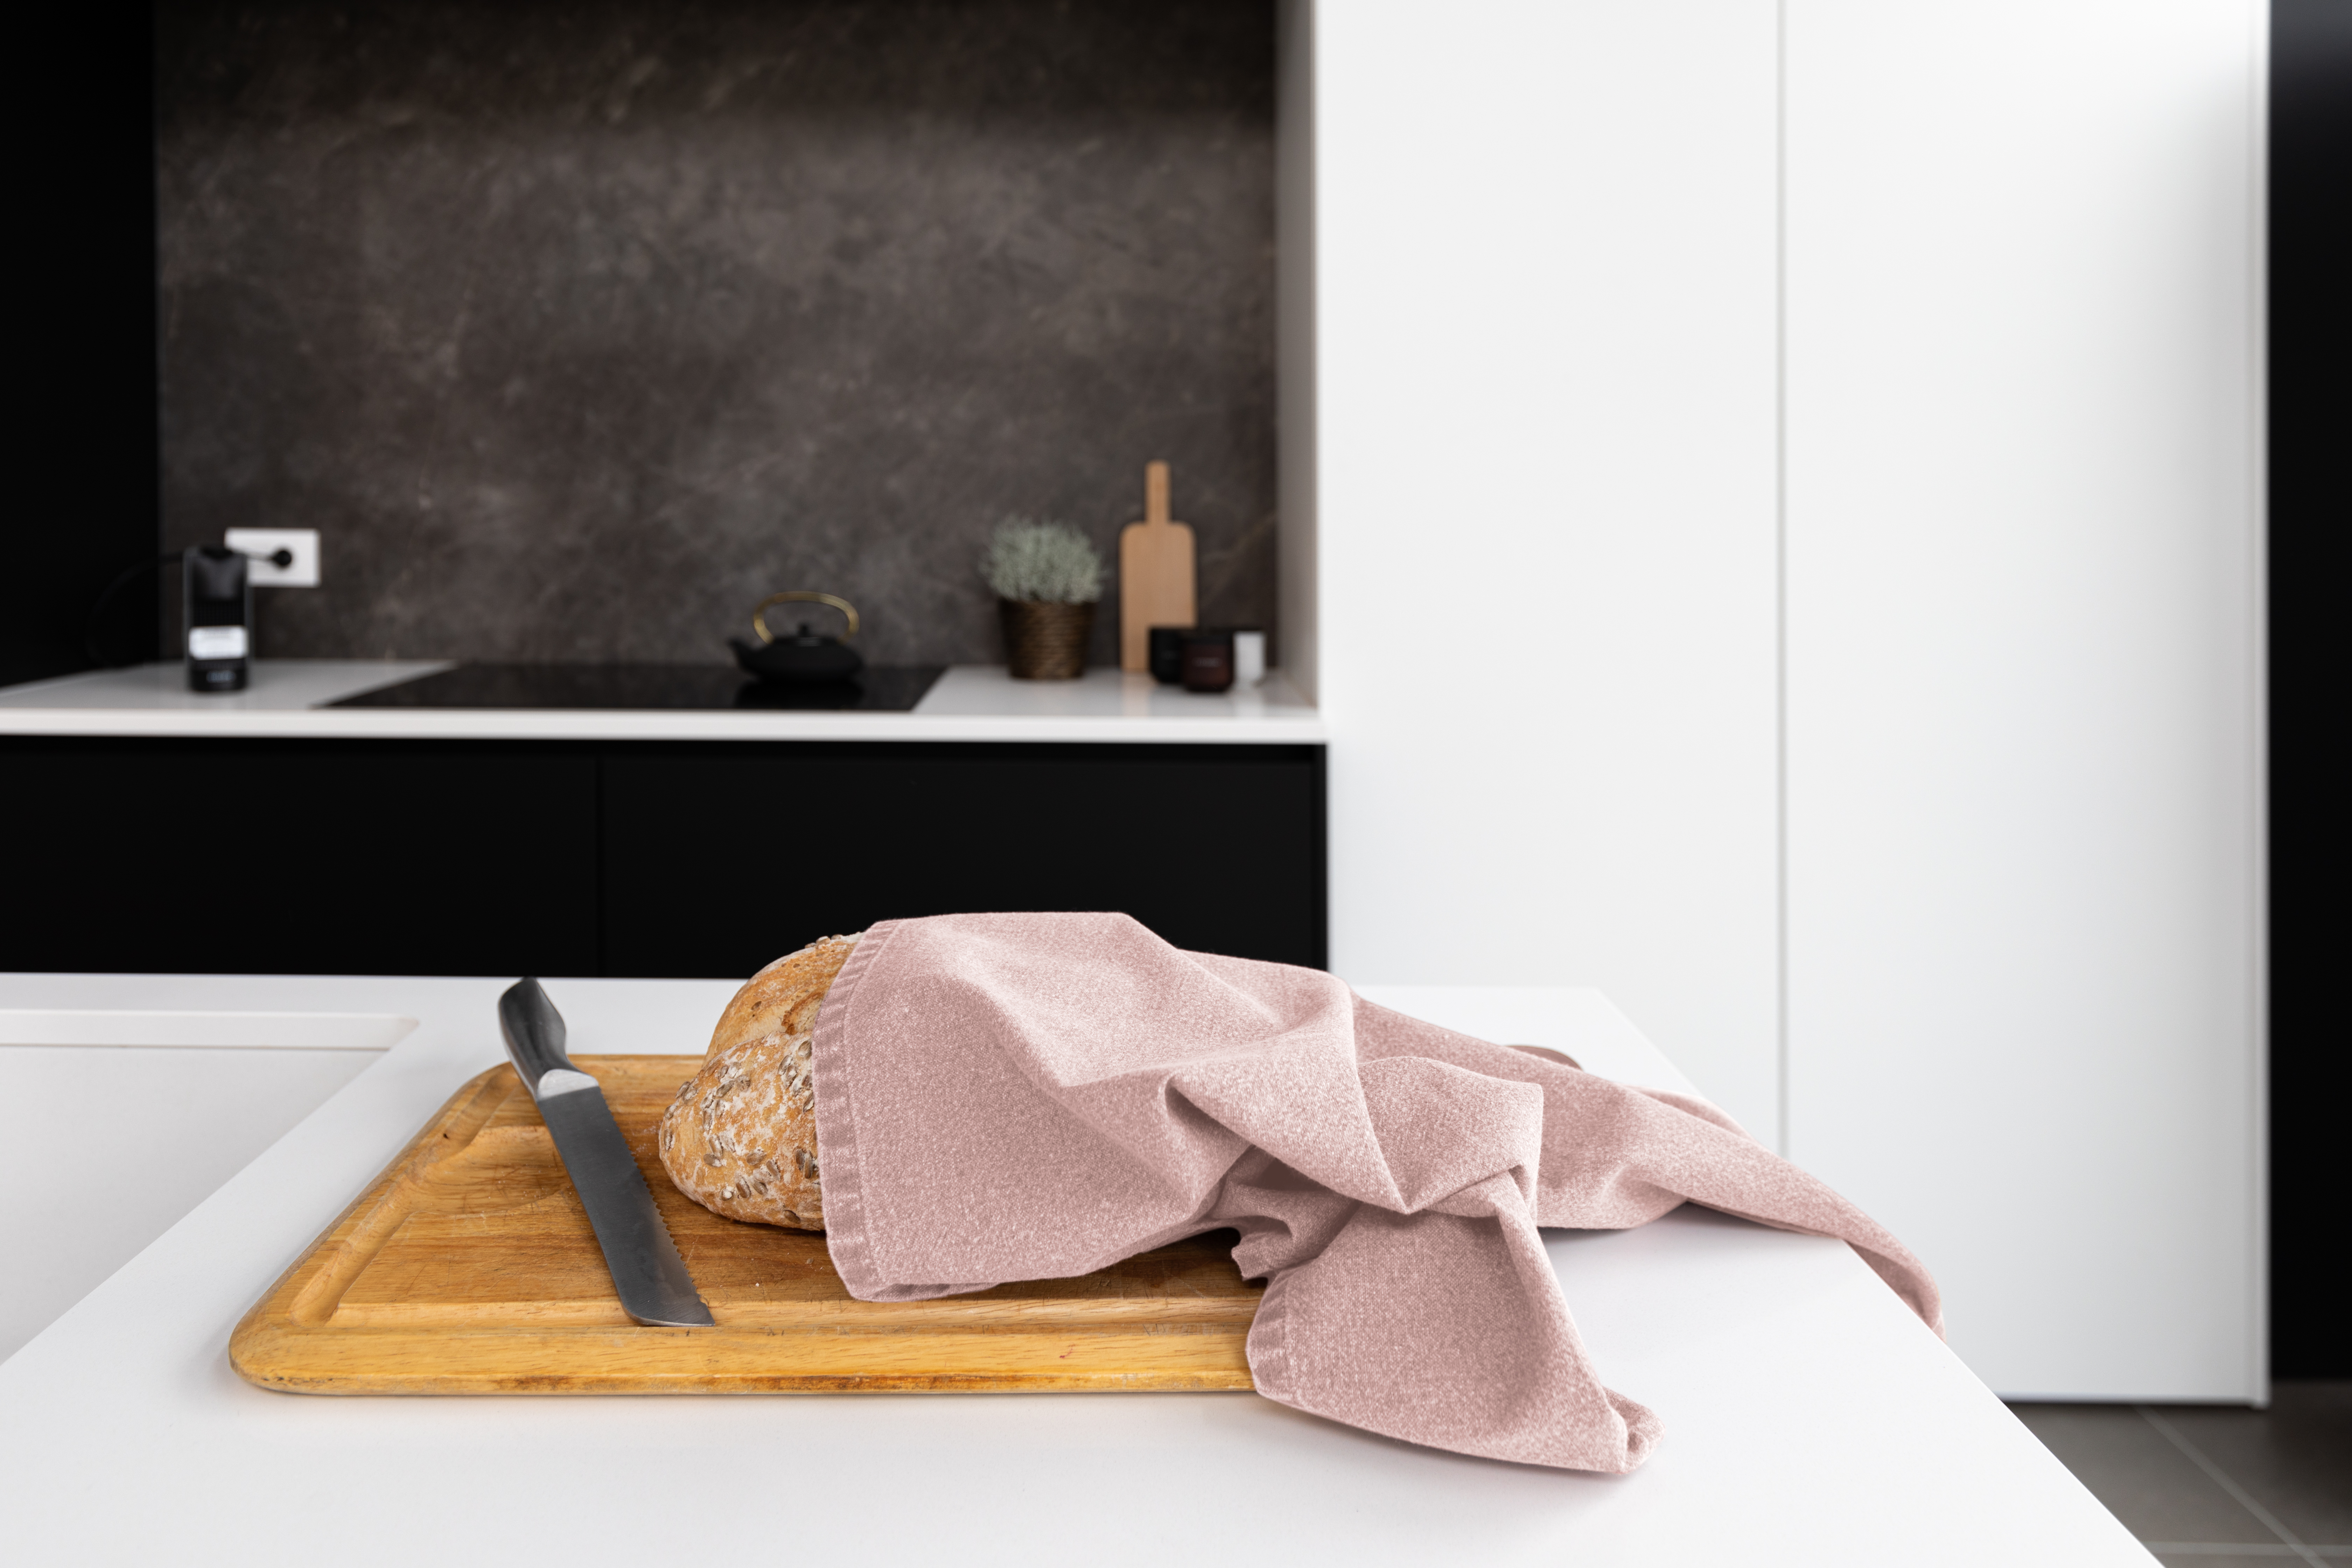 Een keukendoek is om een brood gewikkeld dat op een snijplank is geplaatst